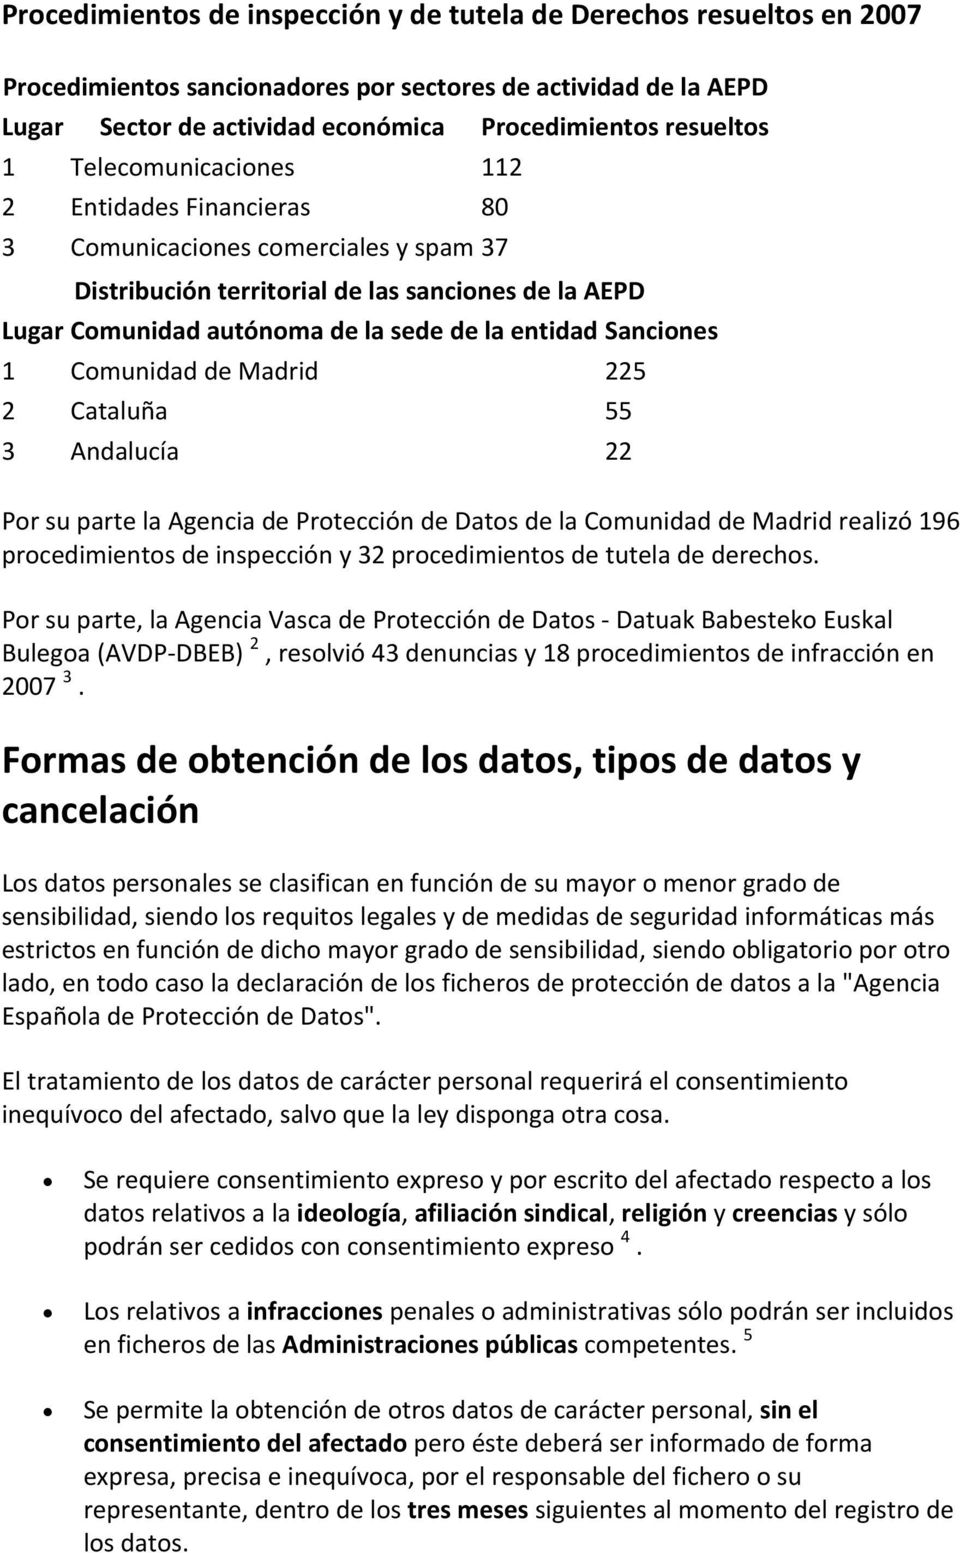 Sanciones 1 Comunidad de Madrid 225 2 Cataluña 55 3 Andalucía 22 Por su parte la Agencia de Protección de Datos de la Comunidad de Madrid realizó 196 procedimientos de inspección y 32 procedimientos